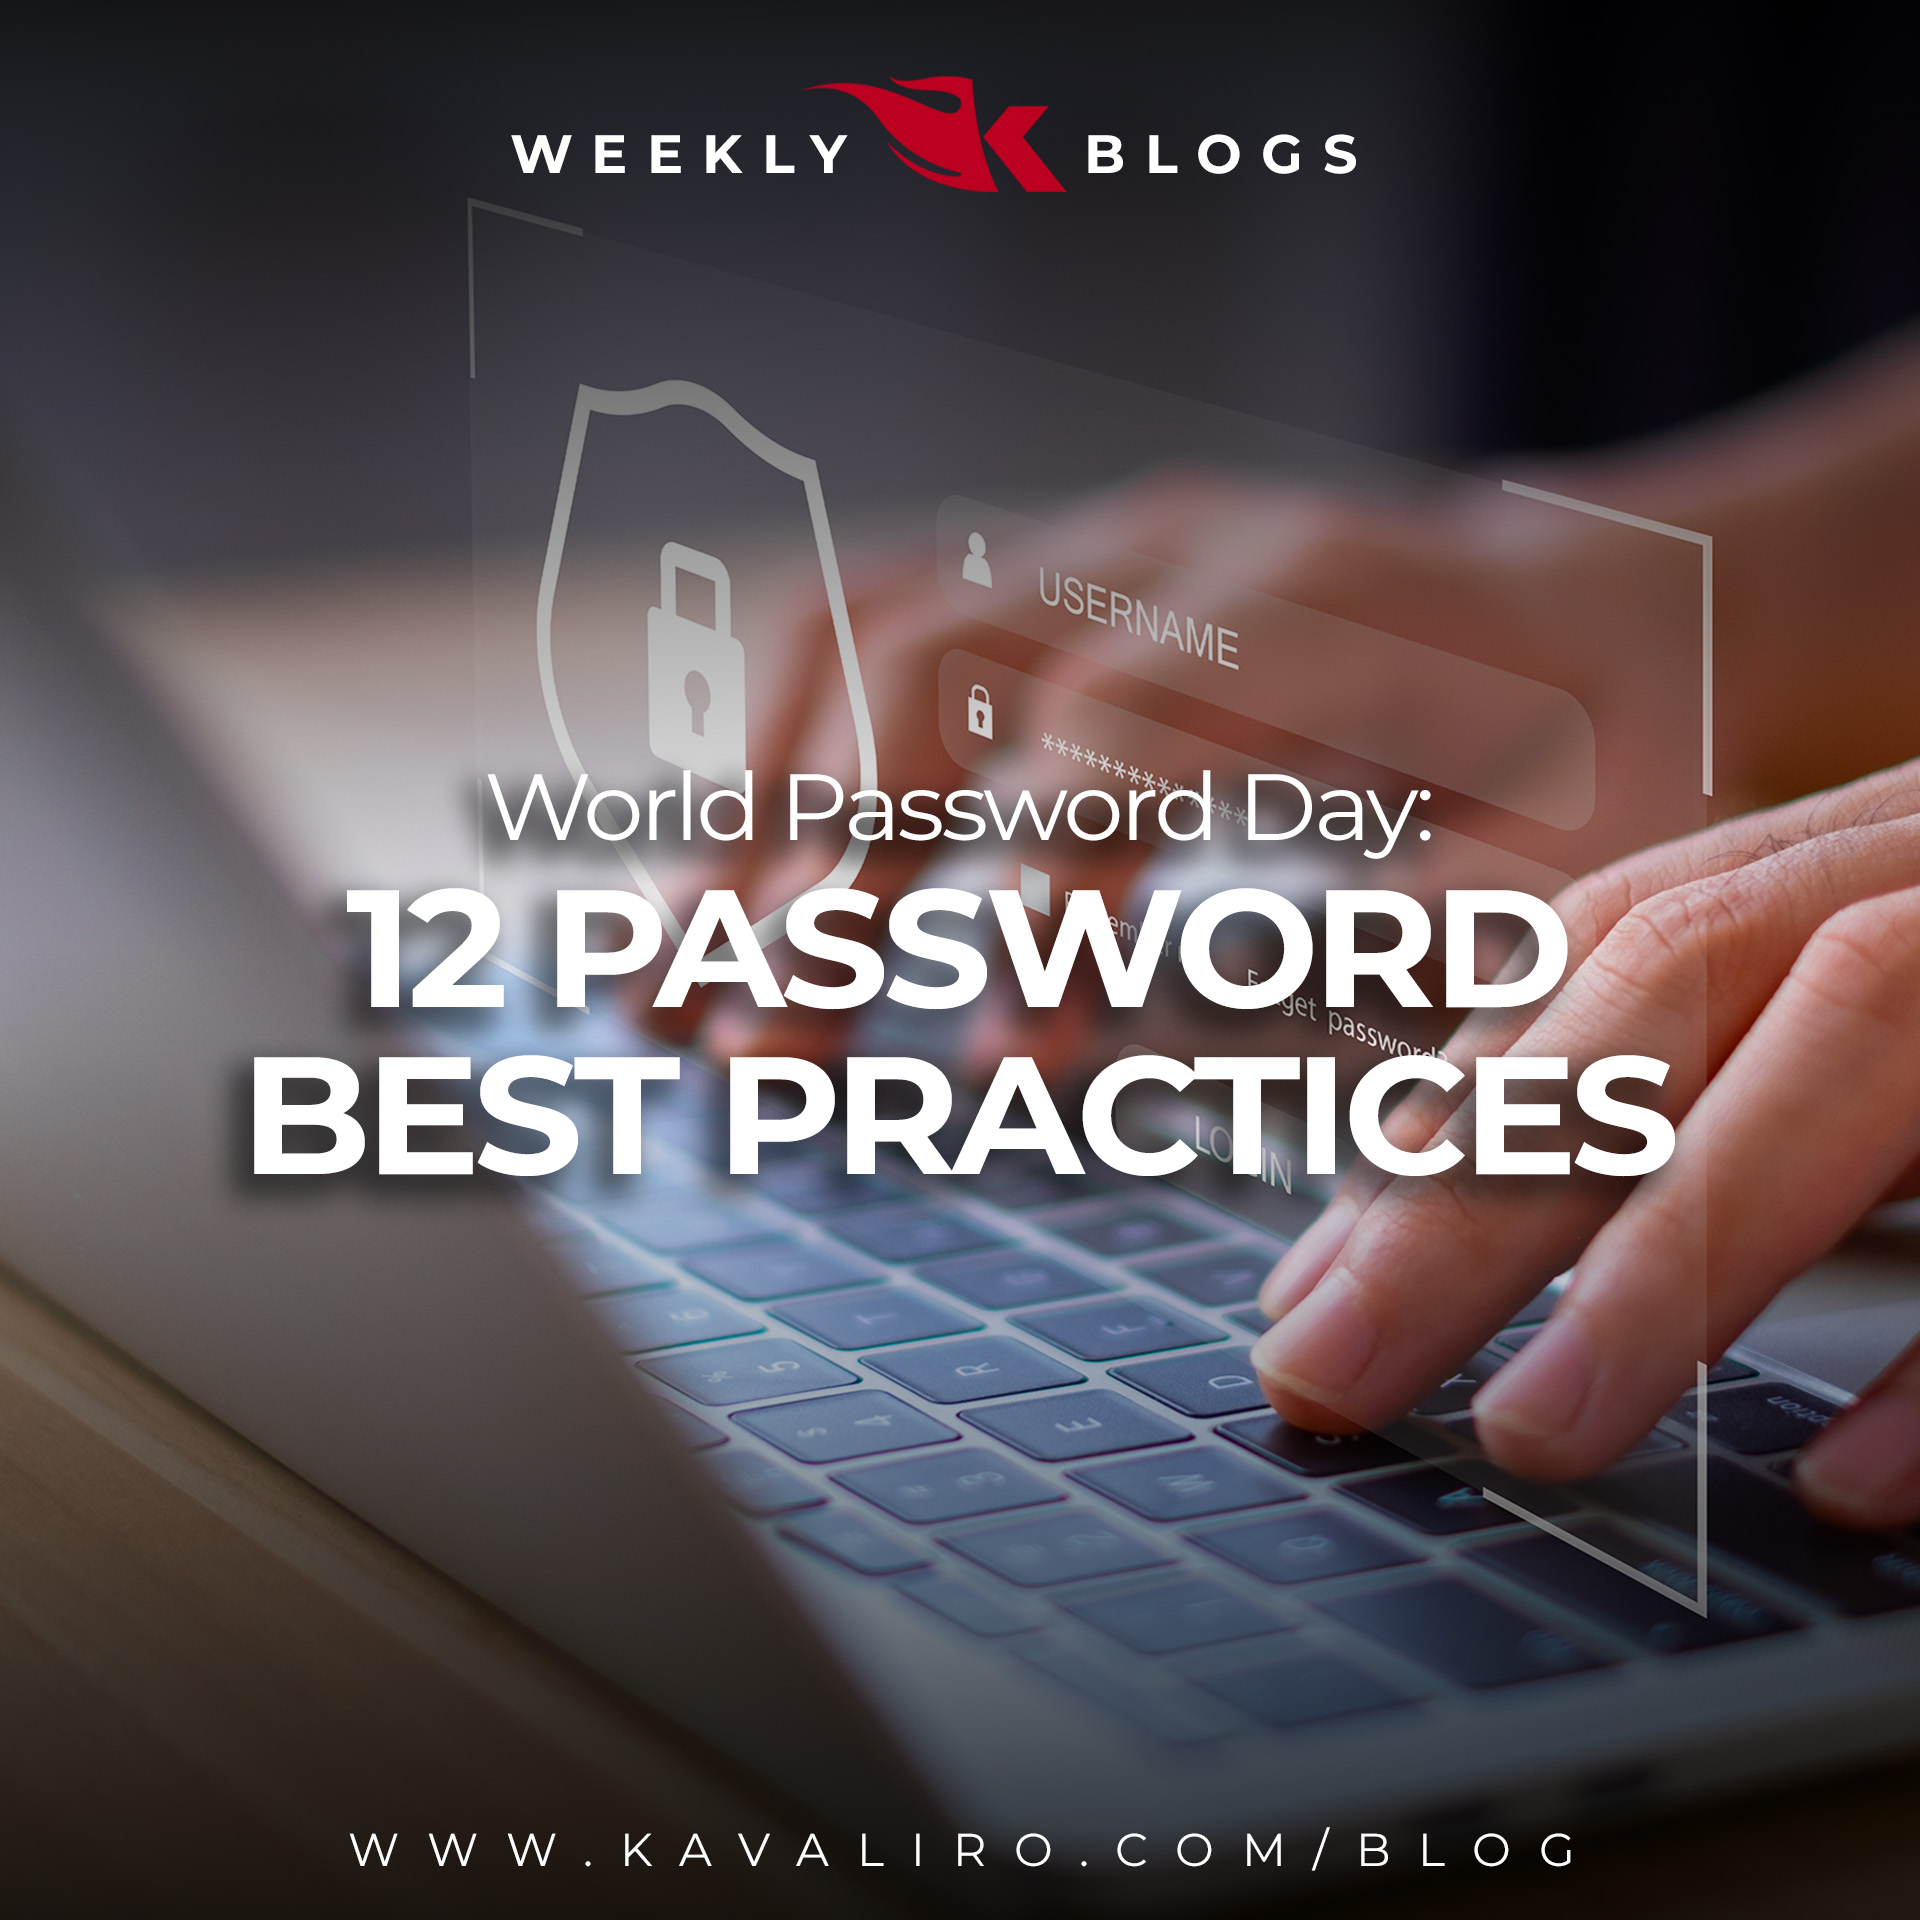 12 Password Best Practices